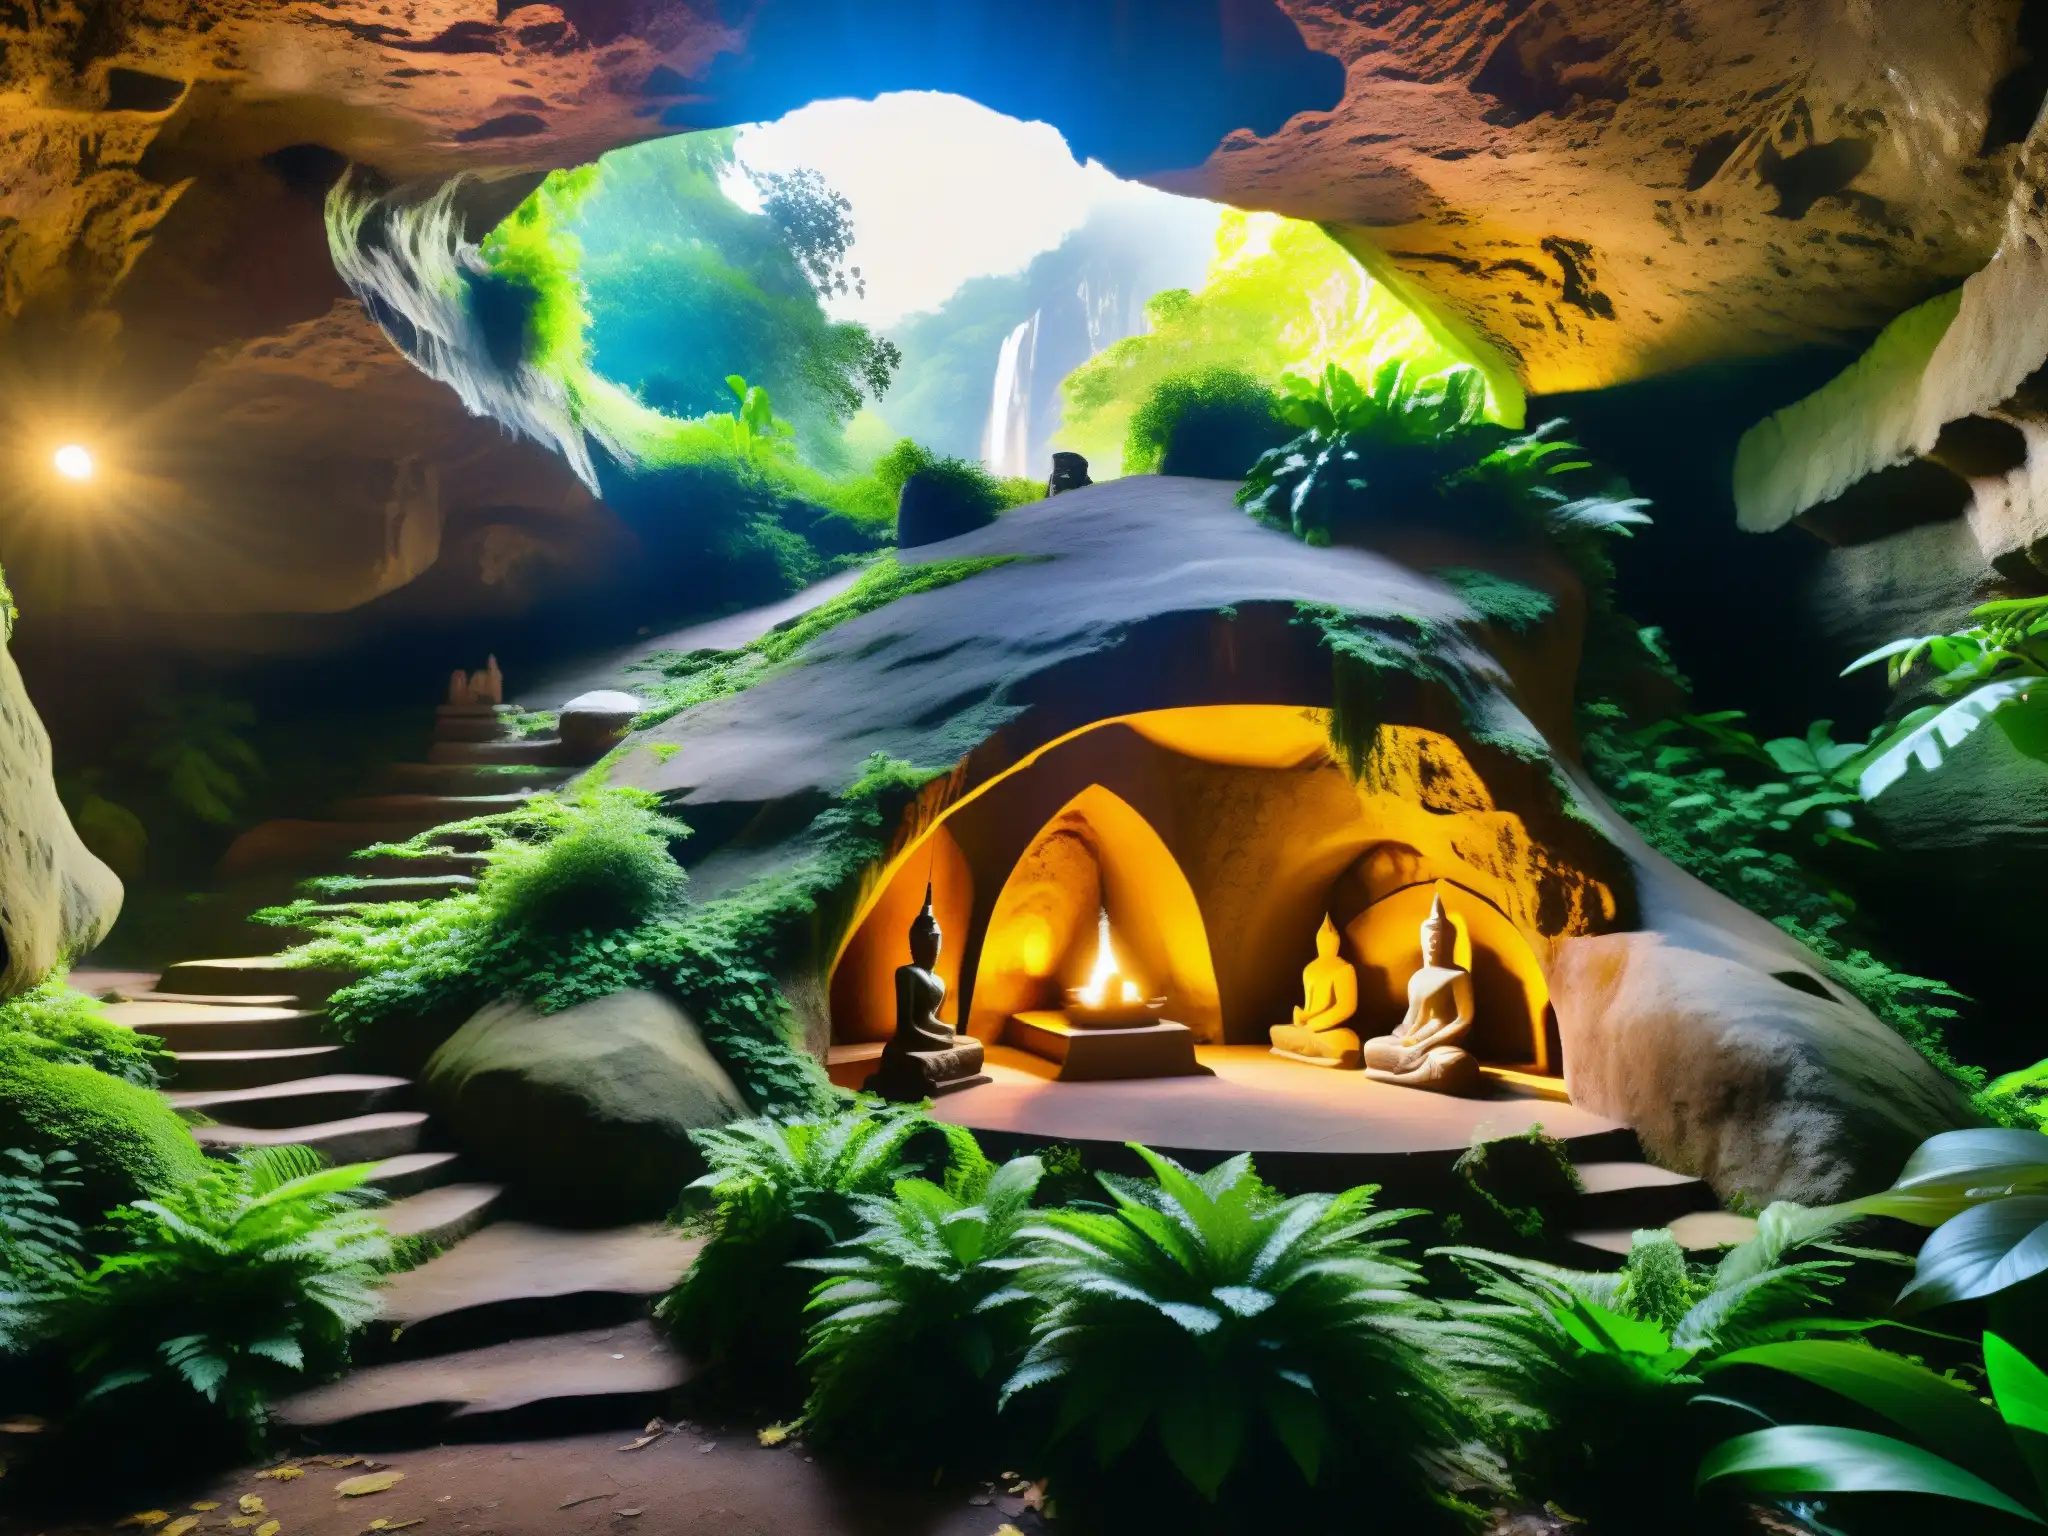 Entrada a cueva de montaña con estatuas de Yoginis en medio de exuberante vegetación, evocando conexión a prácticas religiosas de Yoginis voladores